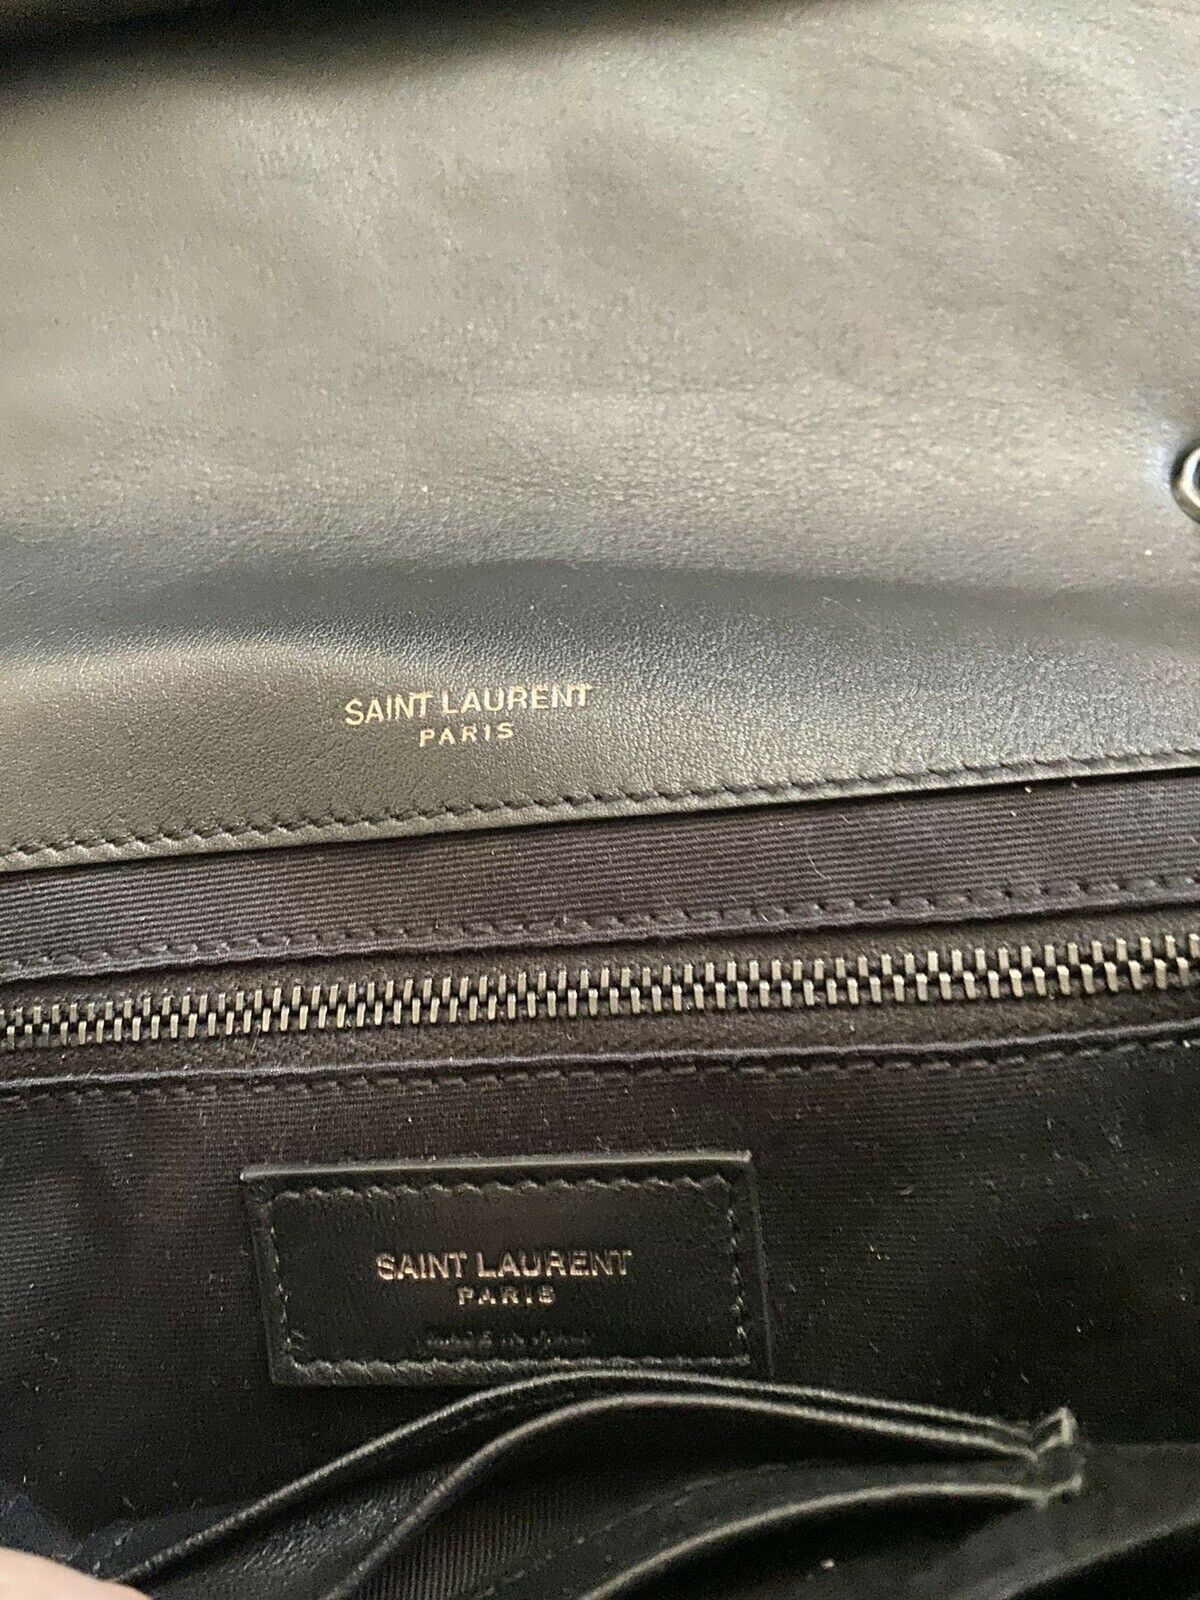 New $3150 Saint Laurent YSL Jaime Leather Shoulder Bag Black/Brown 515821